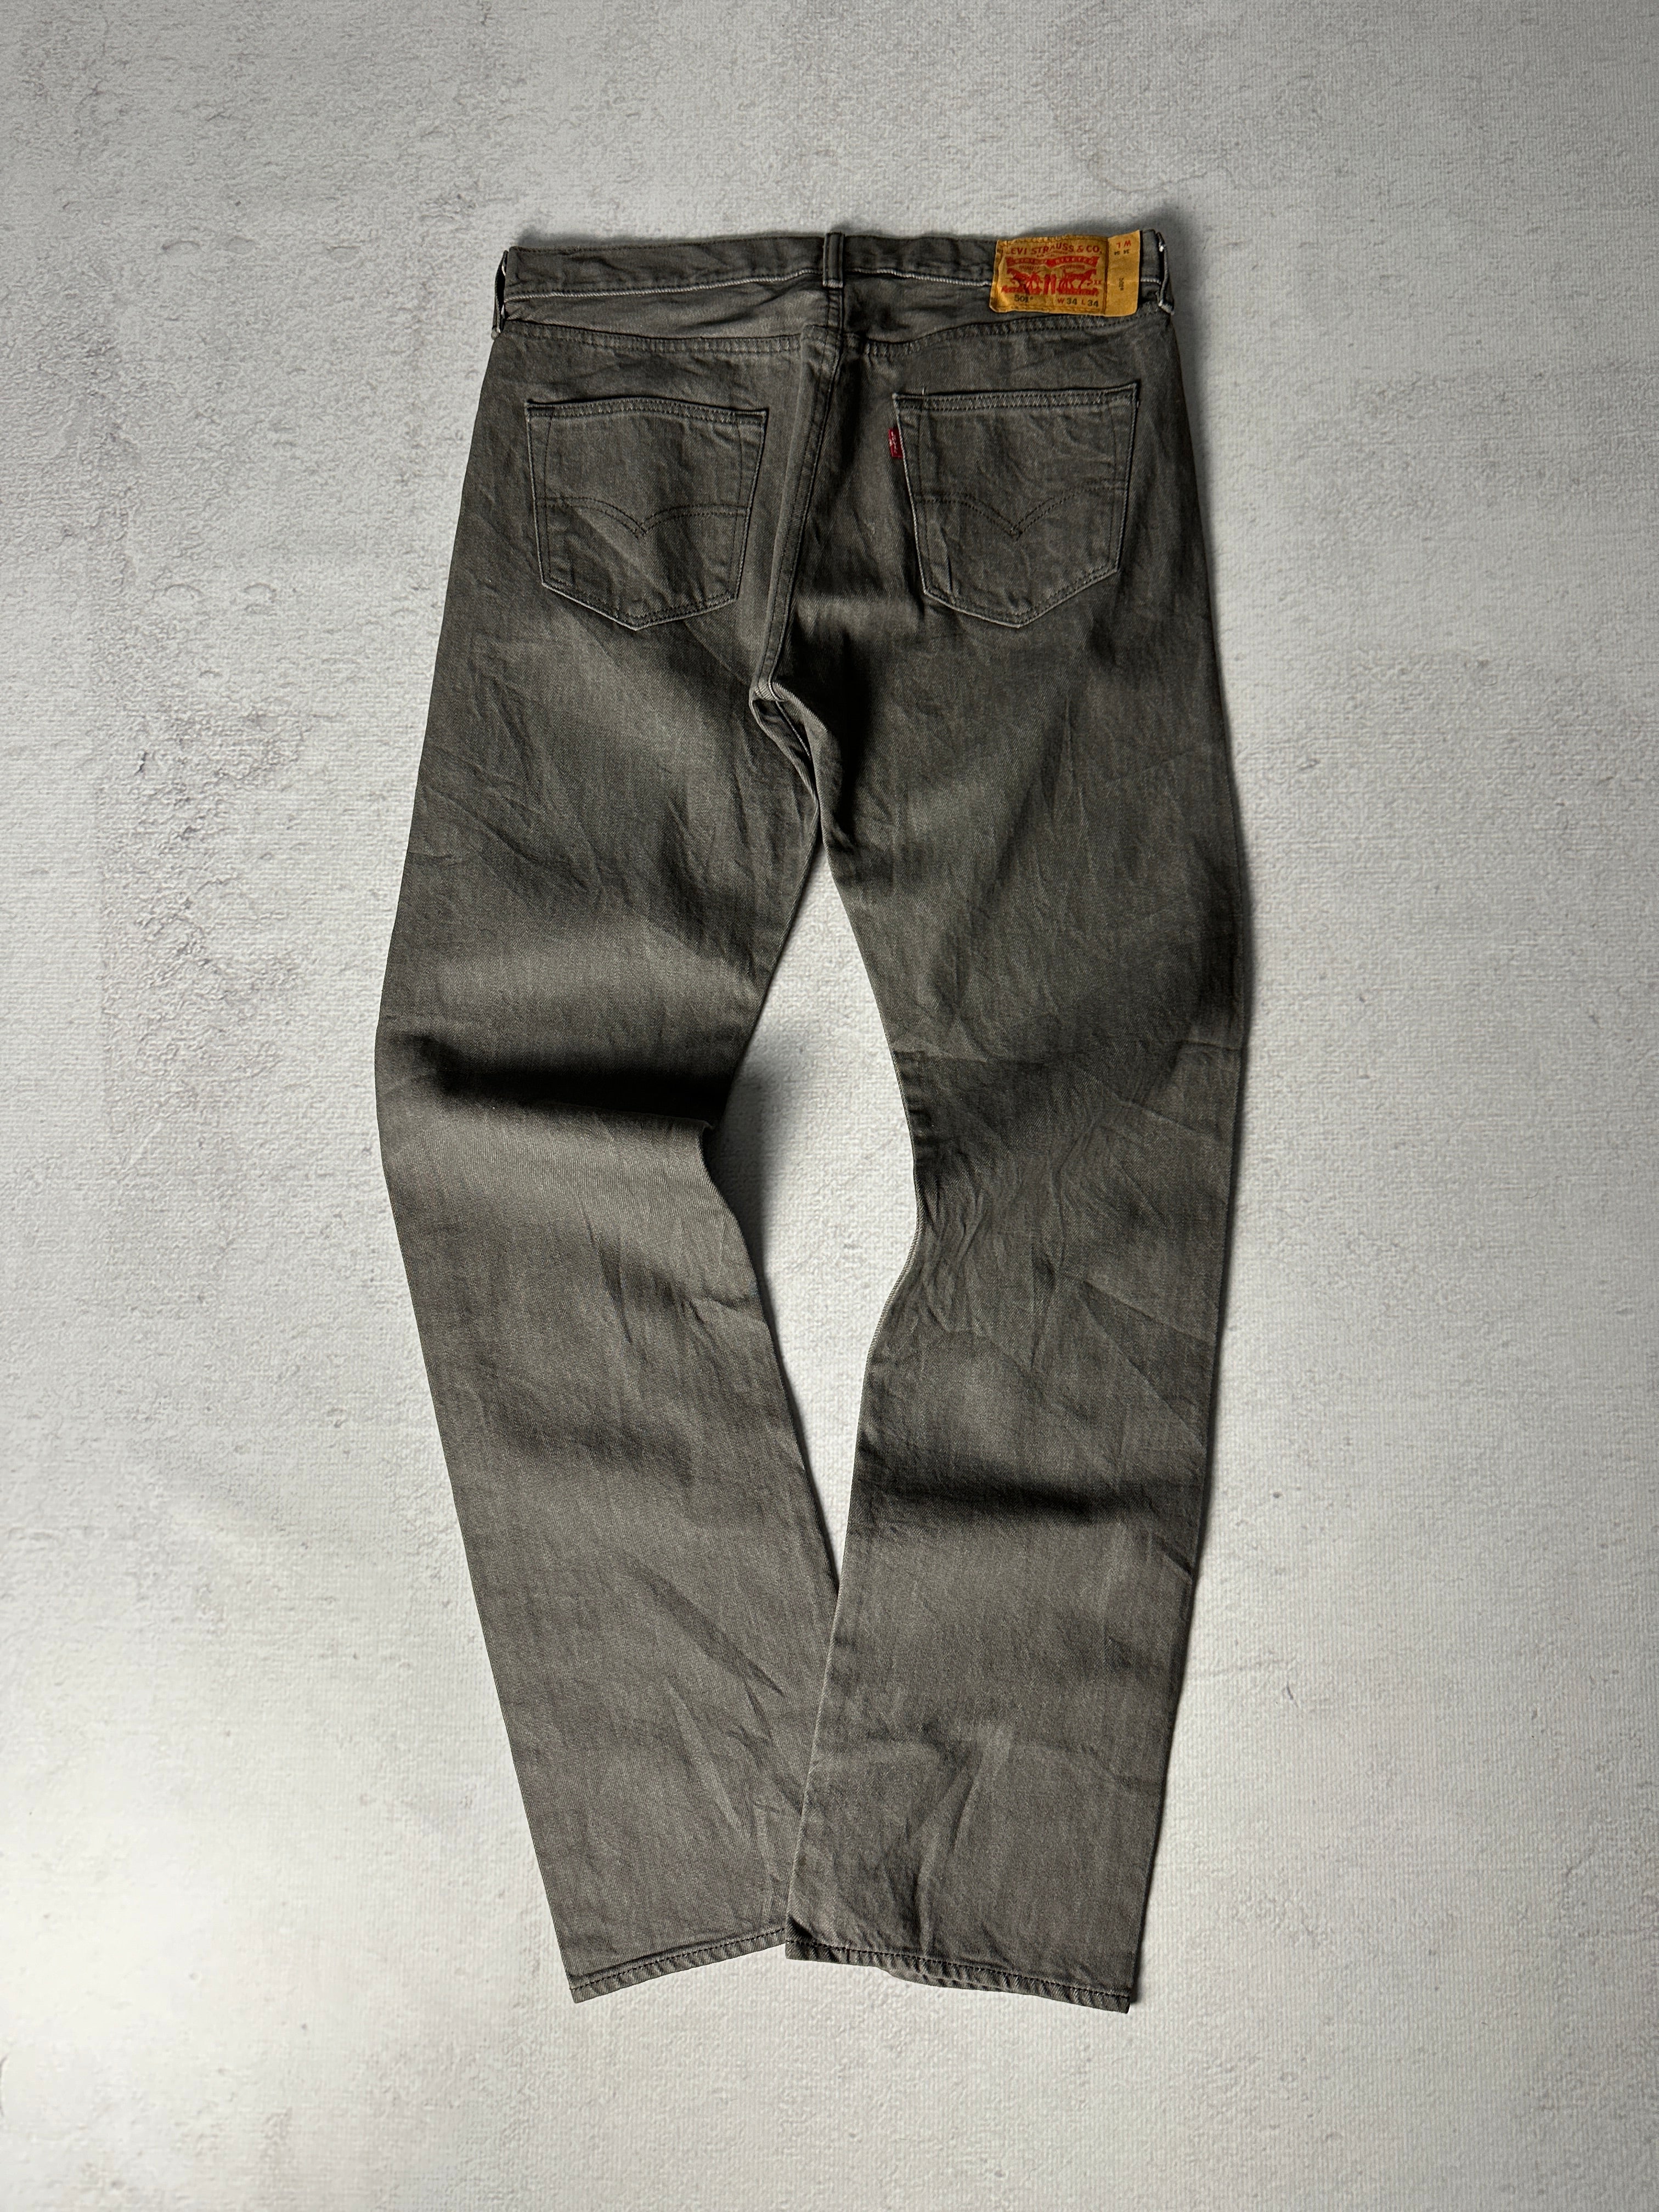 Vintage Levis 501 Jeans - Men's 34W34L